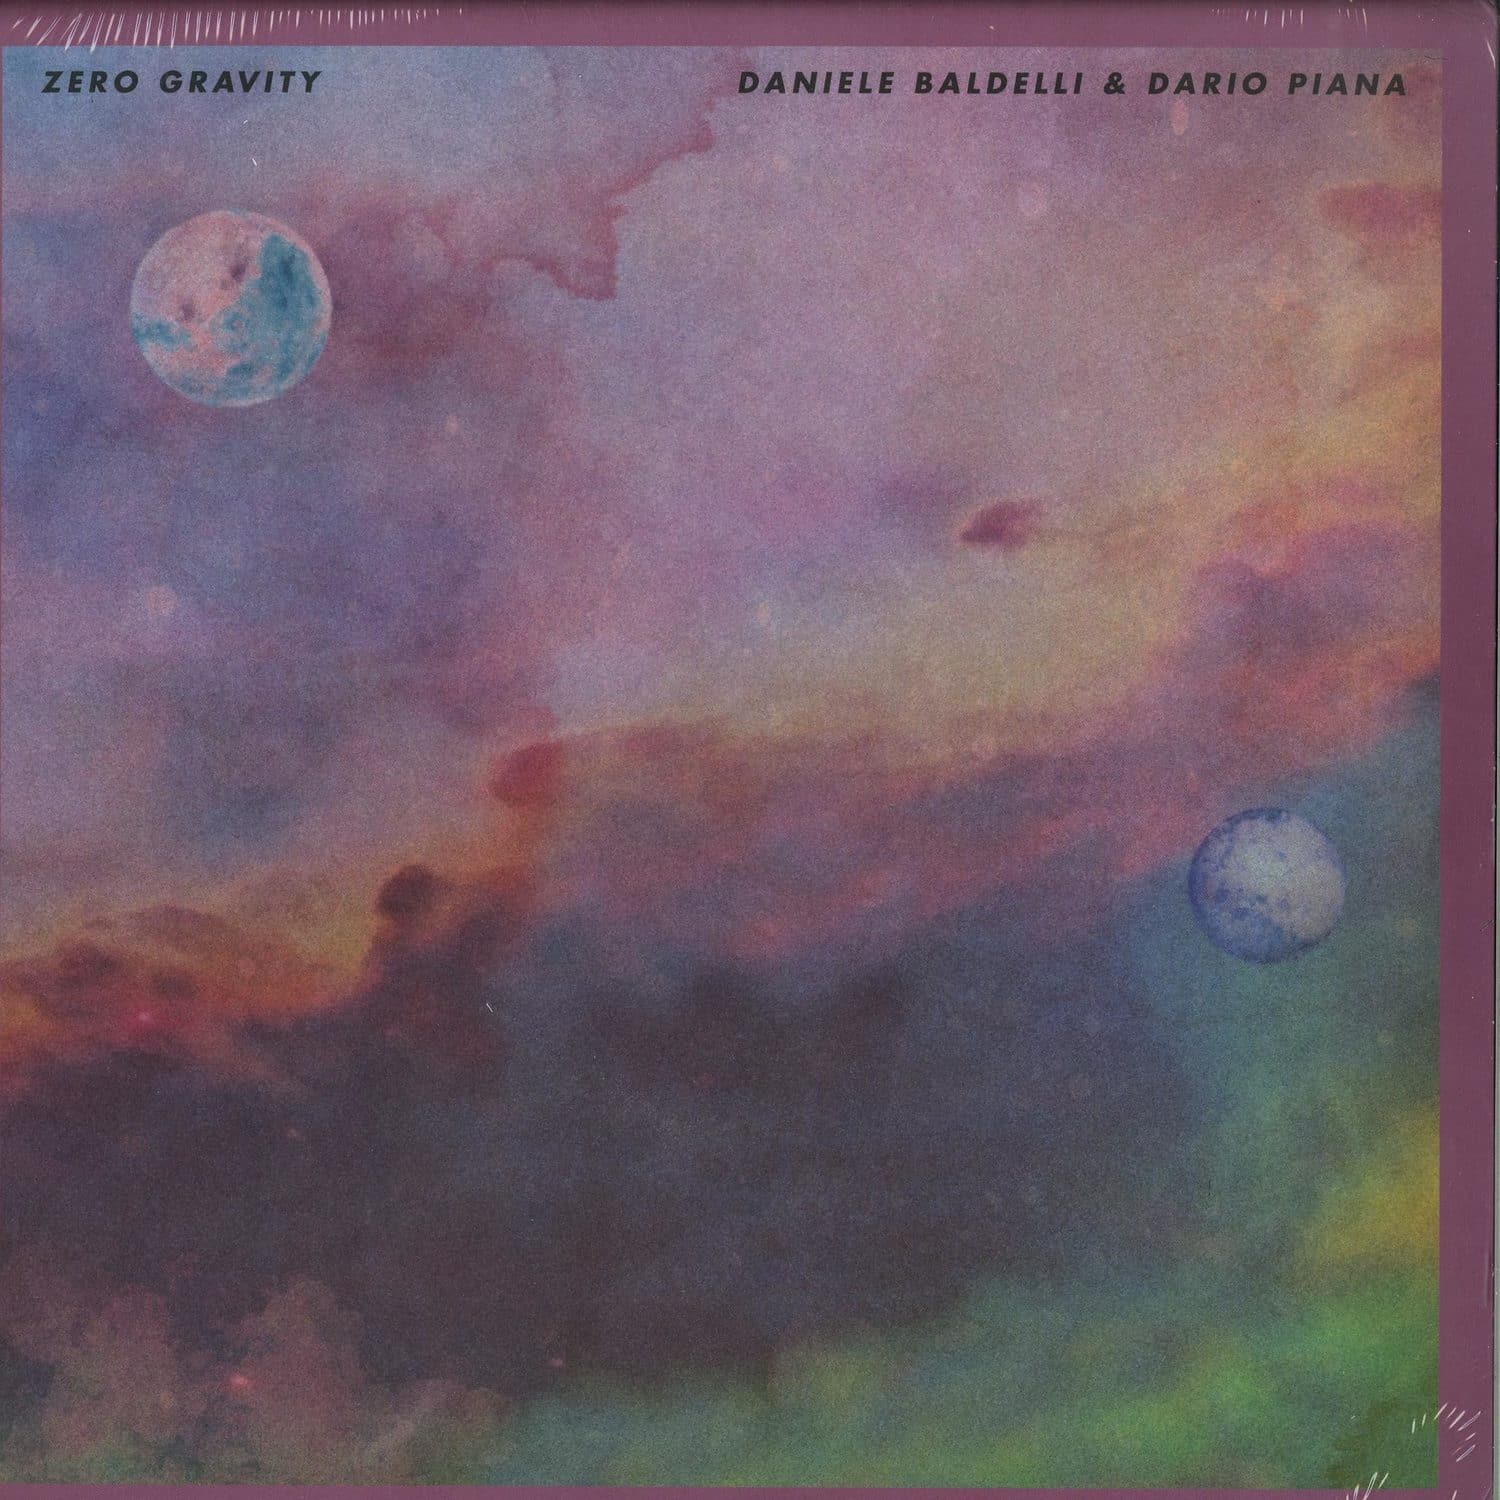 Daniele Baldelli & Dario Piana - ZERO GRAVITY EP